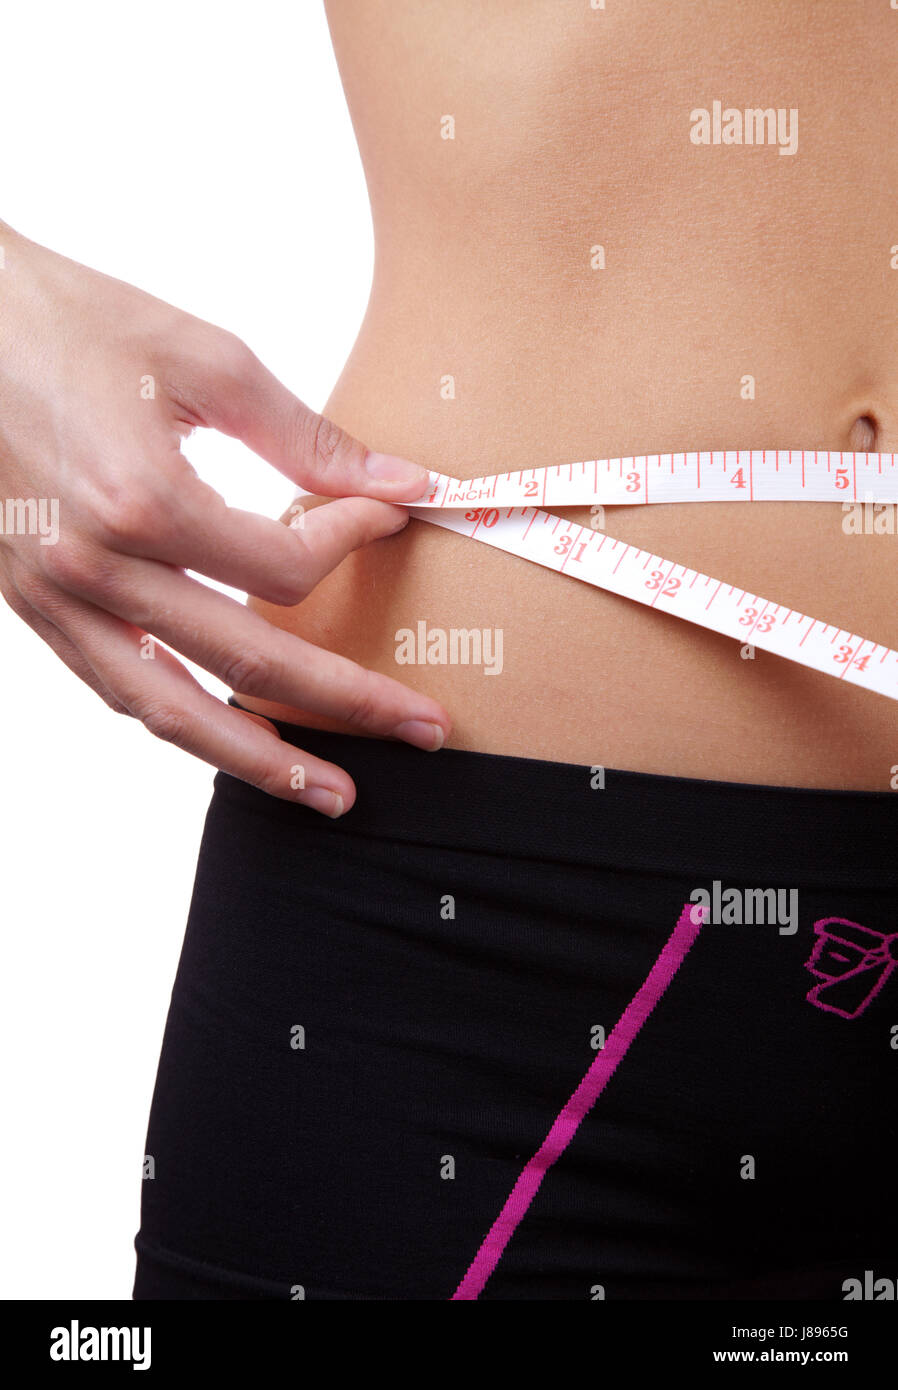 Ernahrung Gewicht Grosse Bewegung Taille Schlanke Trocken Sligth Schlank Hager Dunn Stockfotografie Alamy